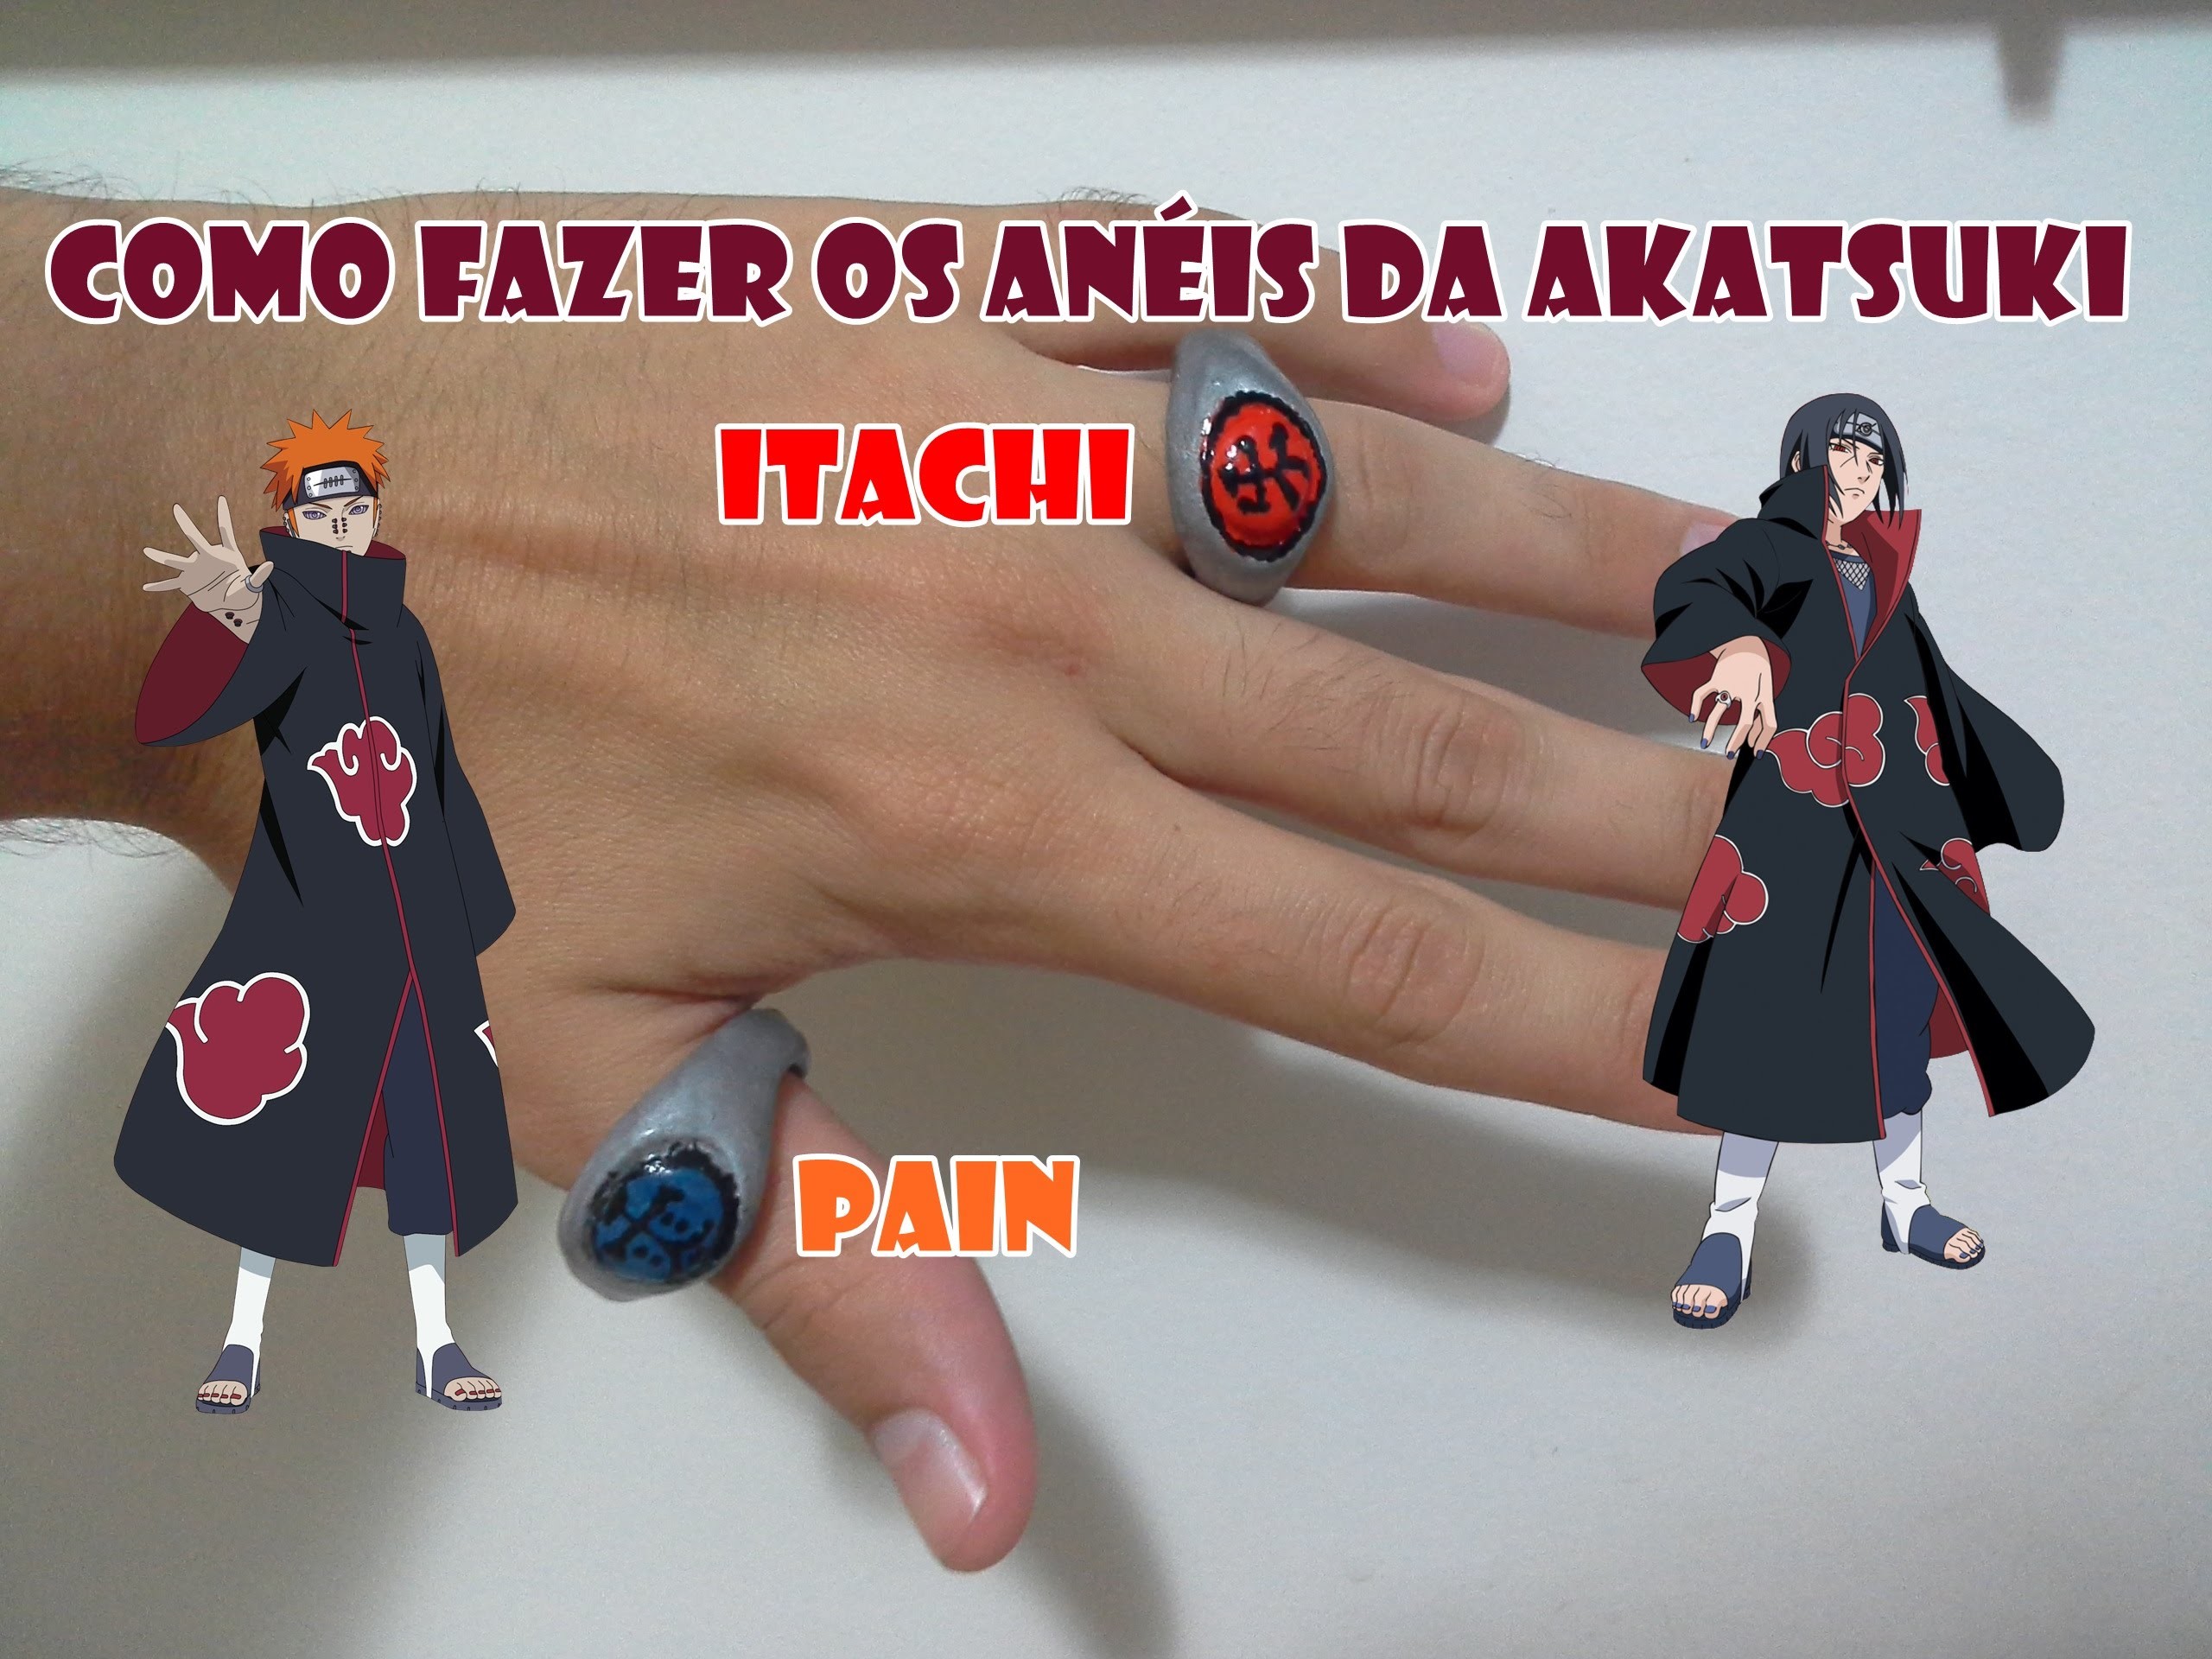 Como fazer os anéis da akatsuki(itachi e pain)